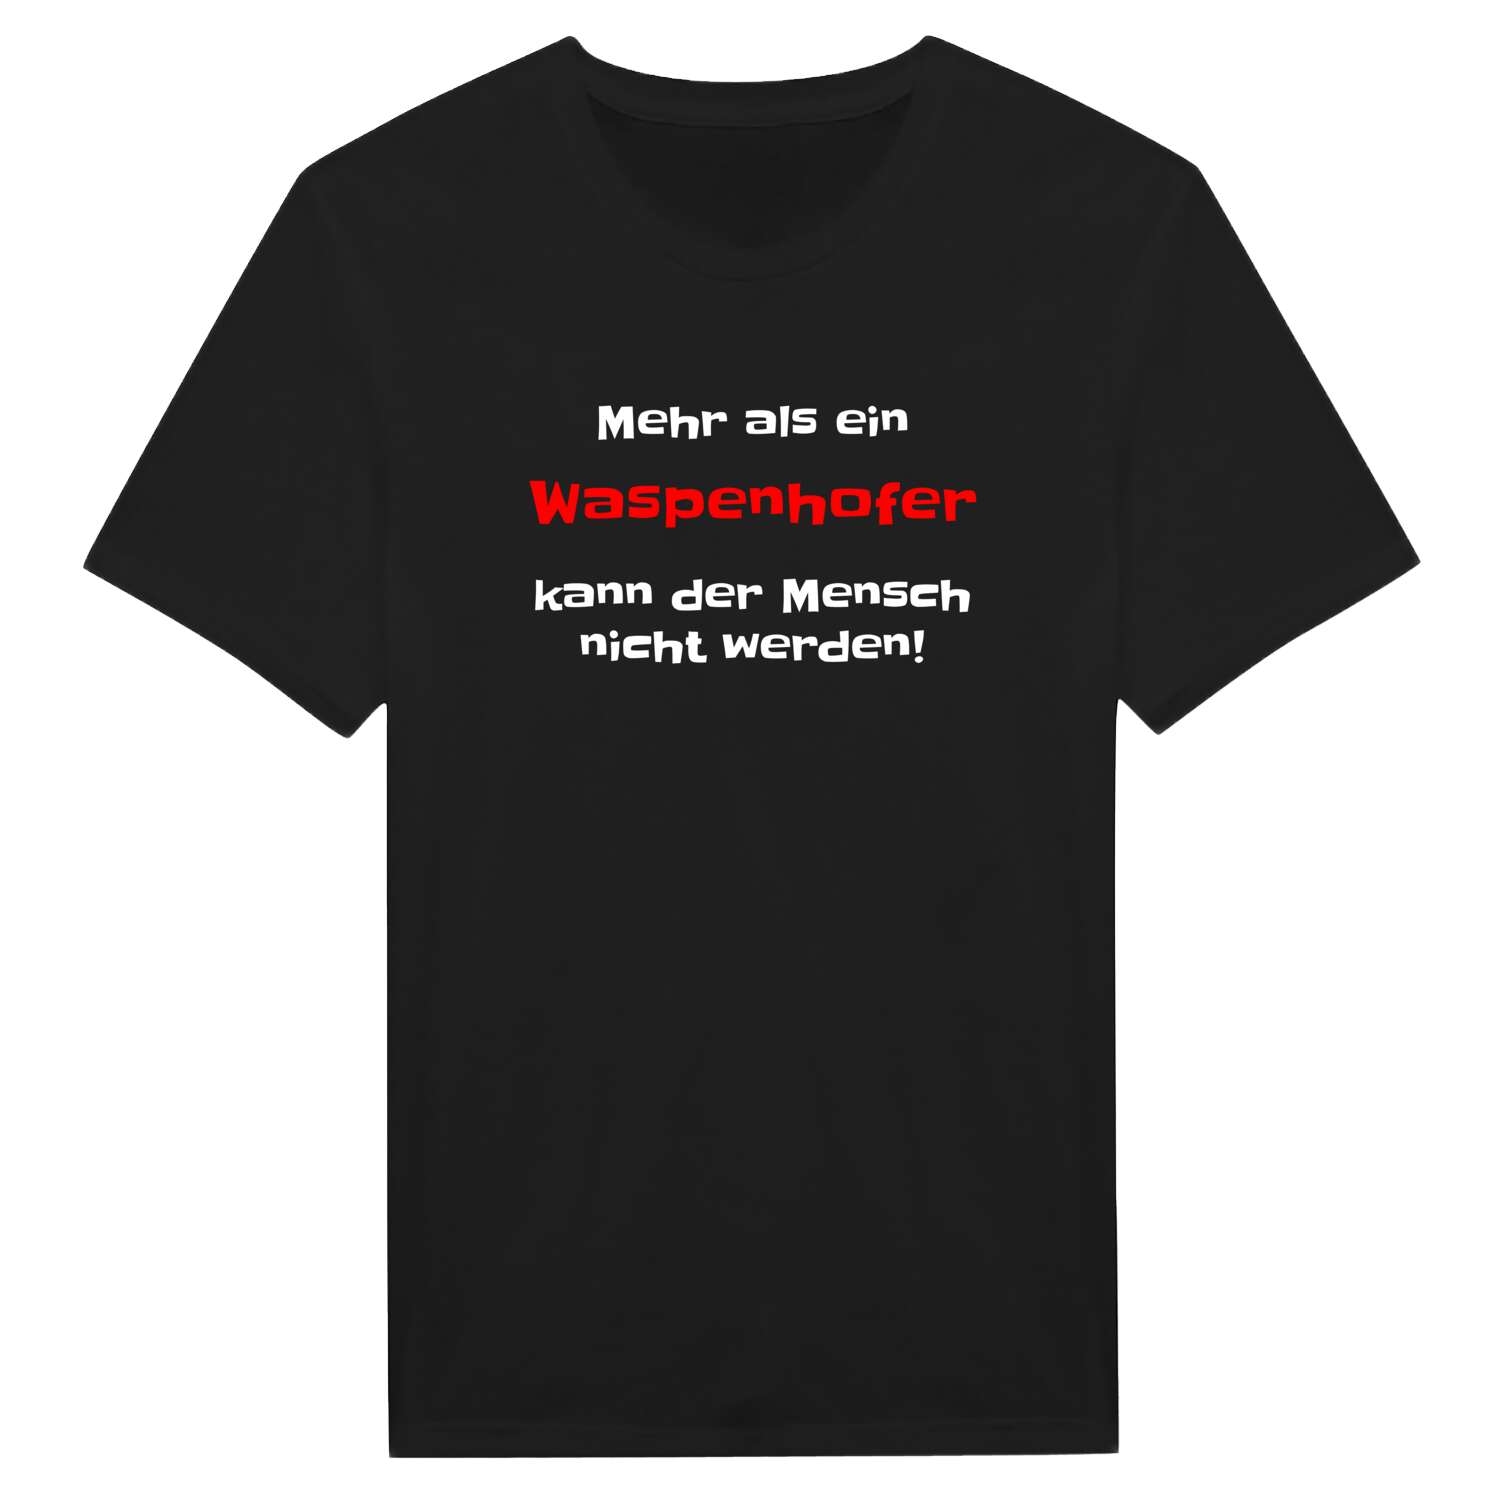 Waspenhof T-Shirt »Mehr als ein«